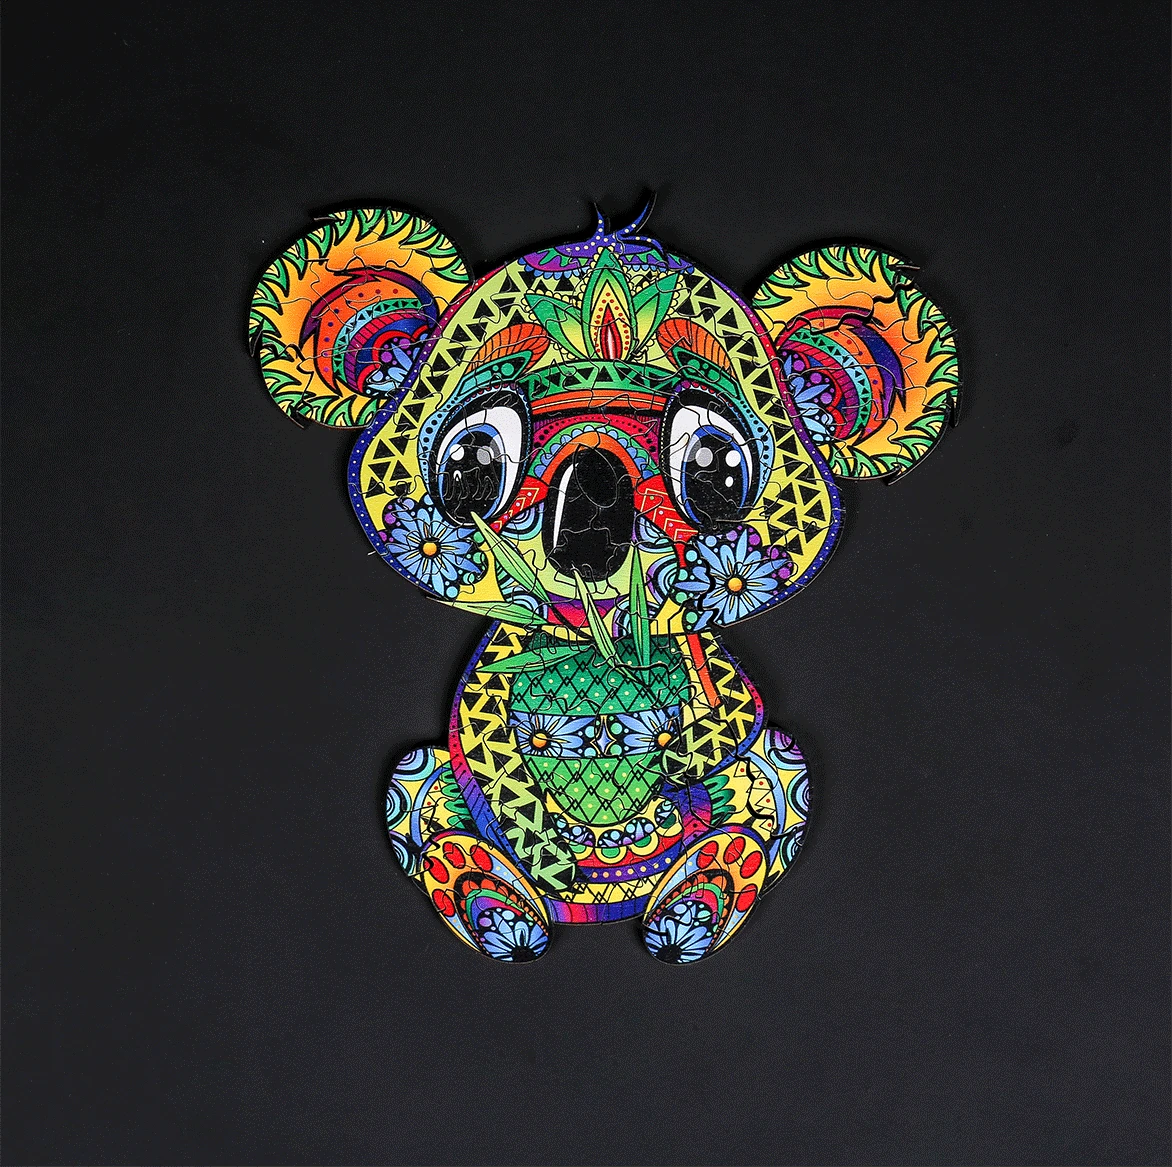 Koala Madera Rompecabezas Única Forma Animal de Piezas 3D DIY Manualidades Rompecabezas Juguetes para los Niños de la Familia Juego de los Niños de Regalo 0